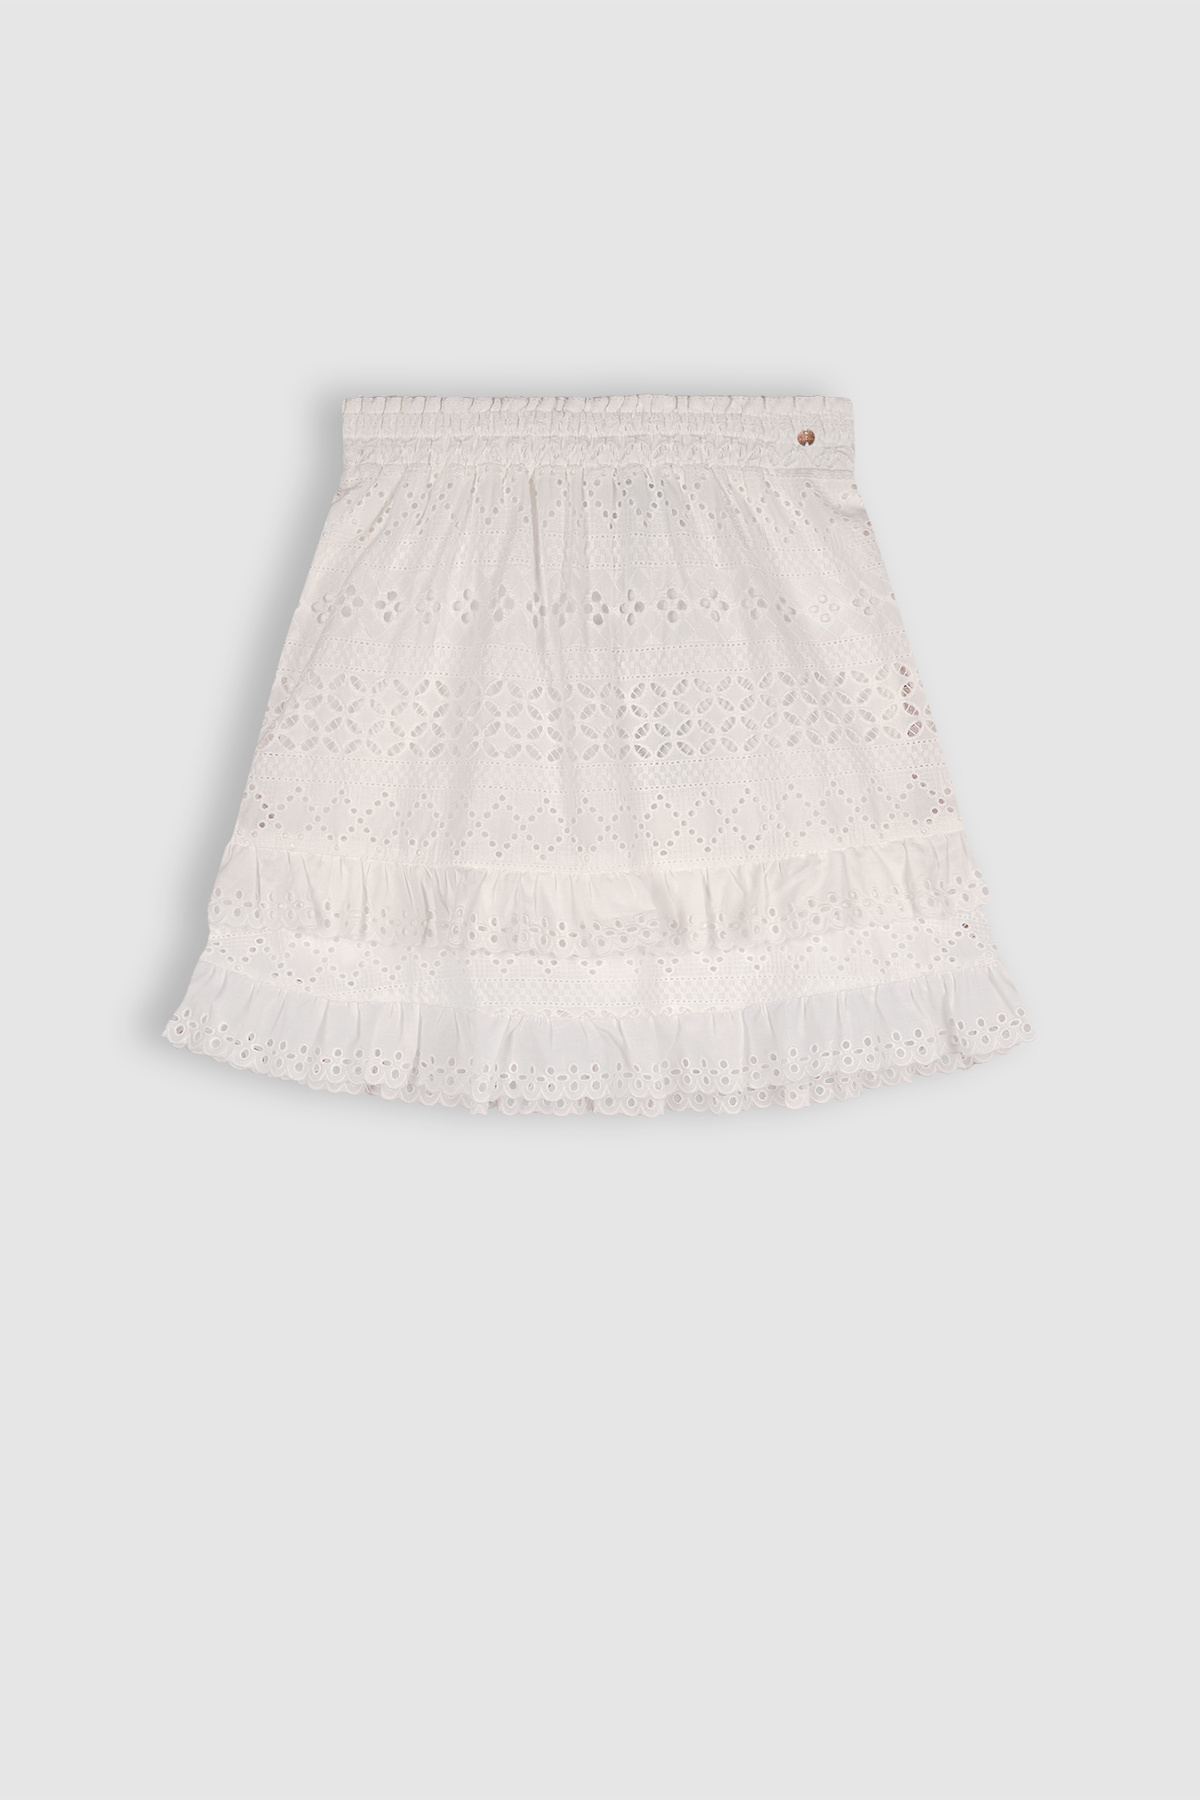 Meisjes rok embroidery - Niuri - Sneeuw wit